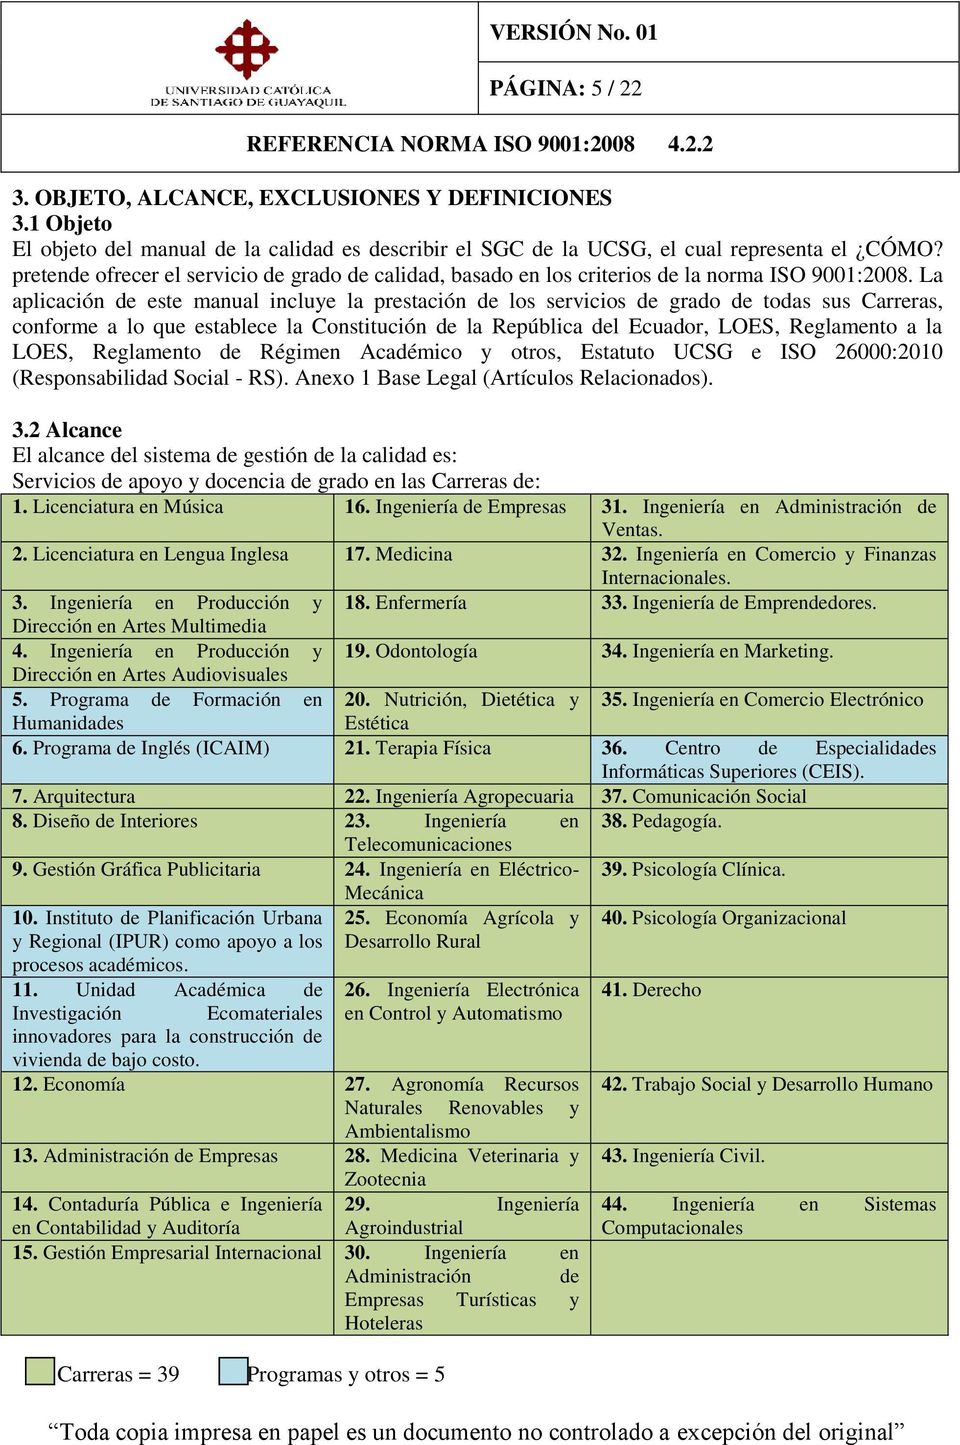 La aplicación de este manual incluye la prestación de los servicios de grado de todas sus Carreras, conforme a lo que establece la Constitución de la República del Ecuador, LOES, Reglamento a la